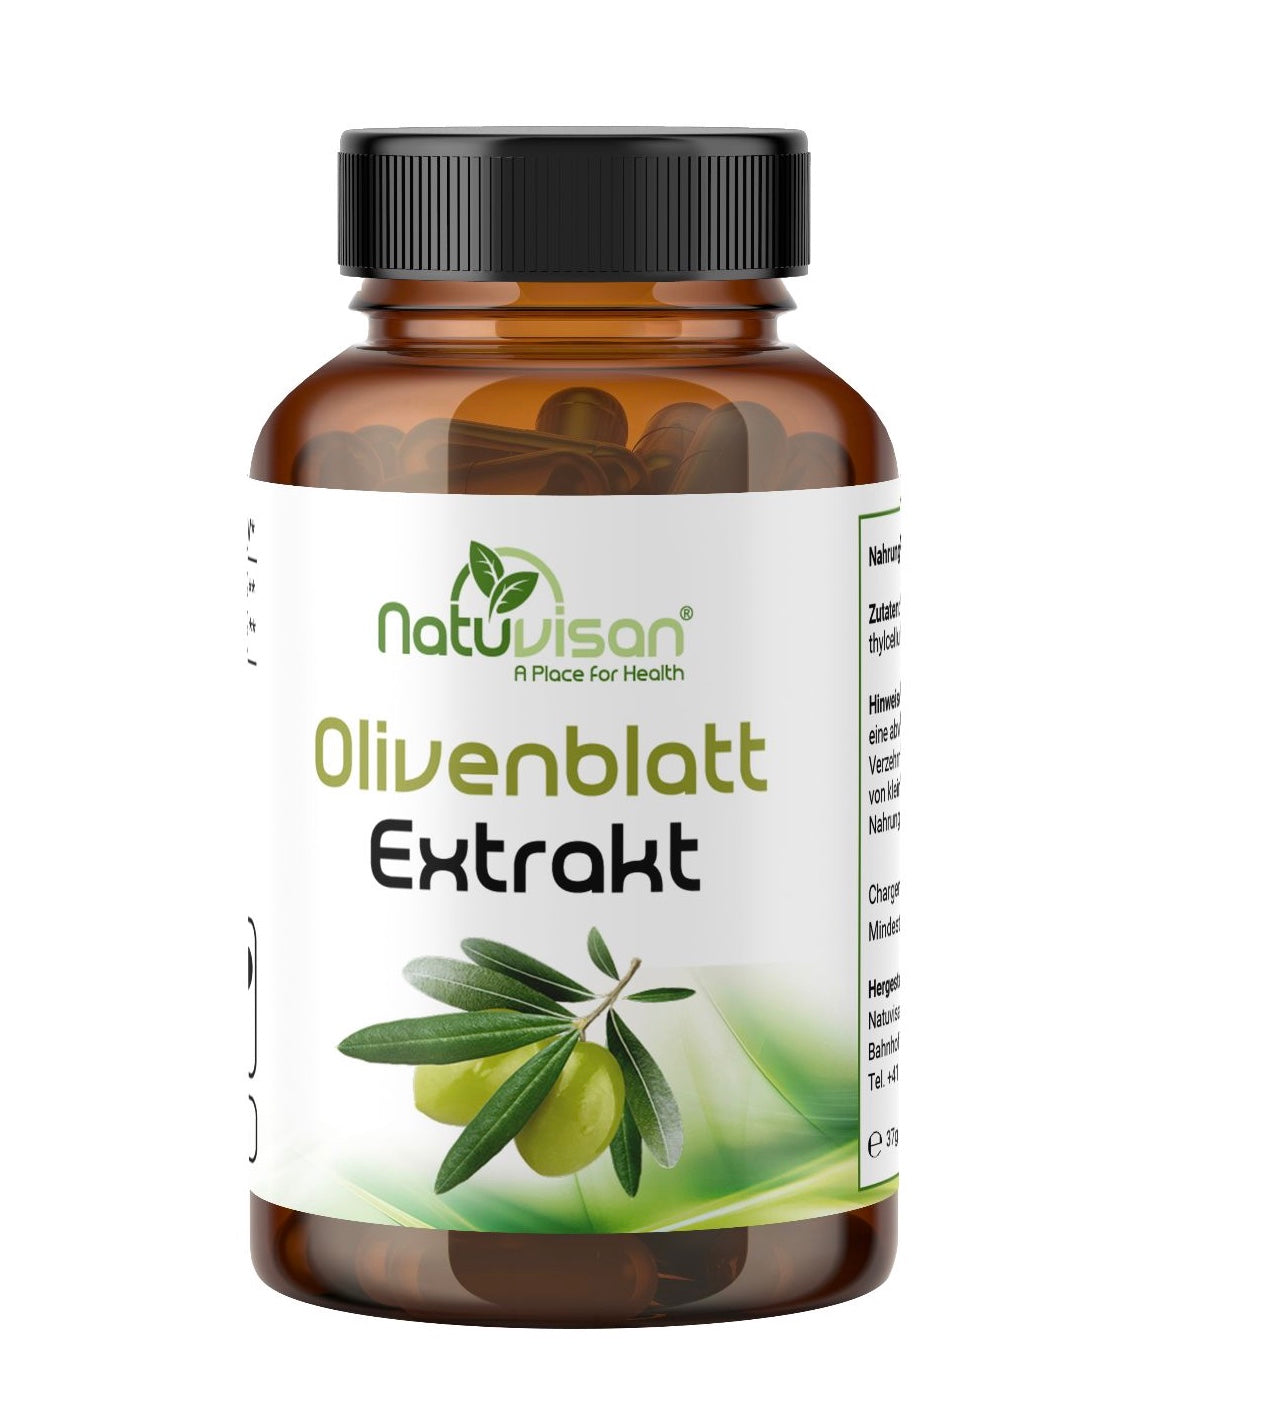 Olivenblatt Extrakt 500 mg - 20% Oleuropein - Anti-Parasiten - 60 Kapseln